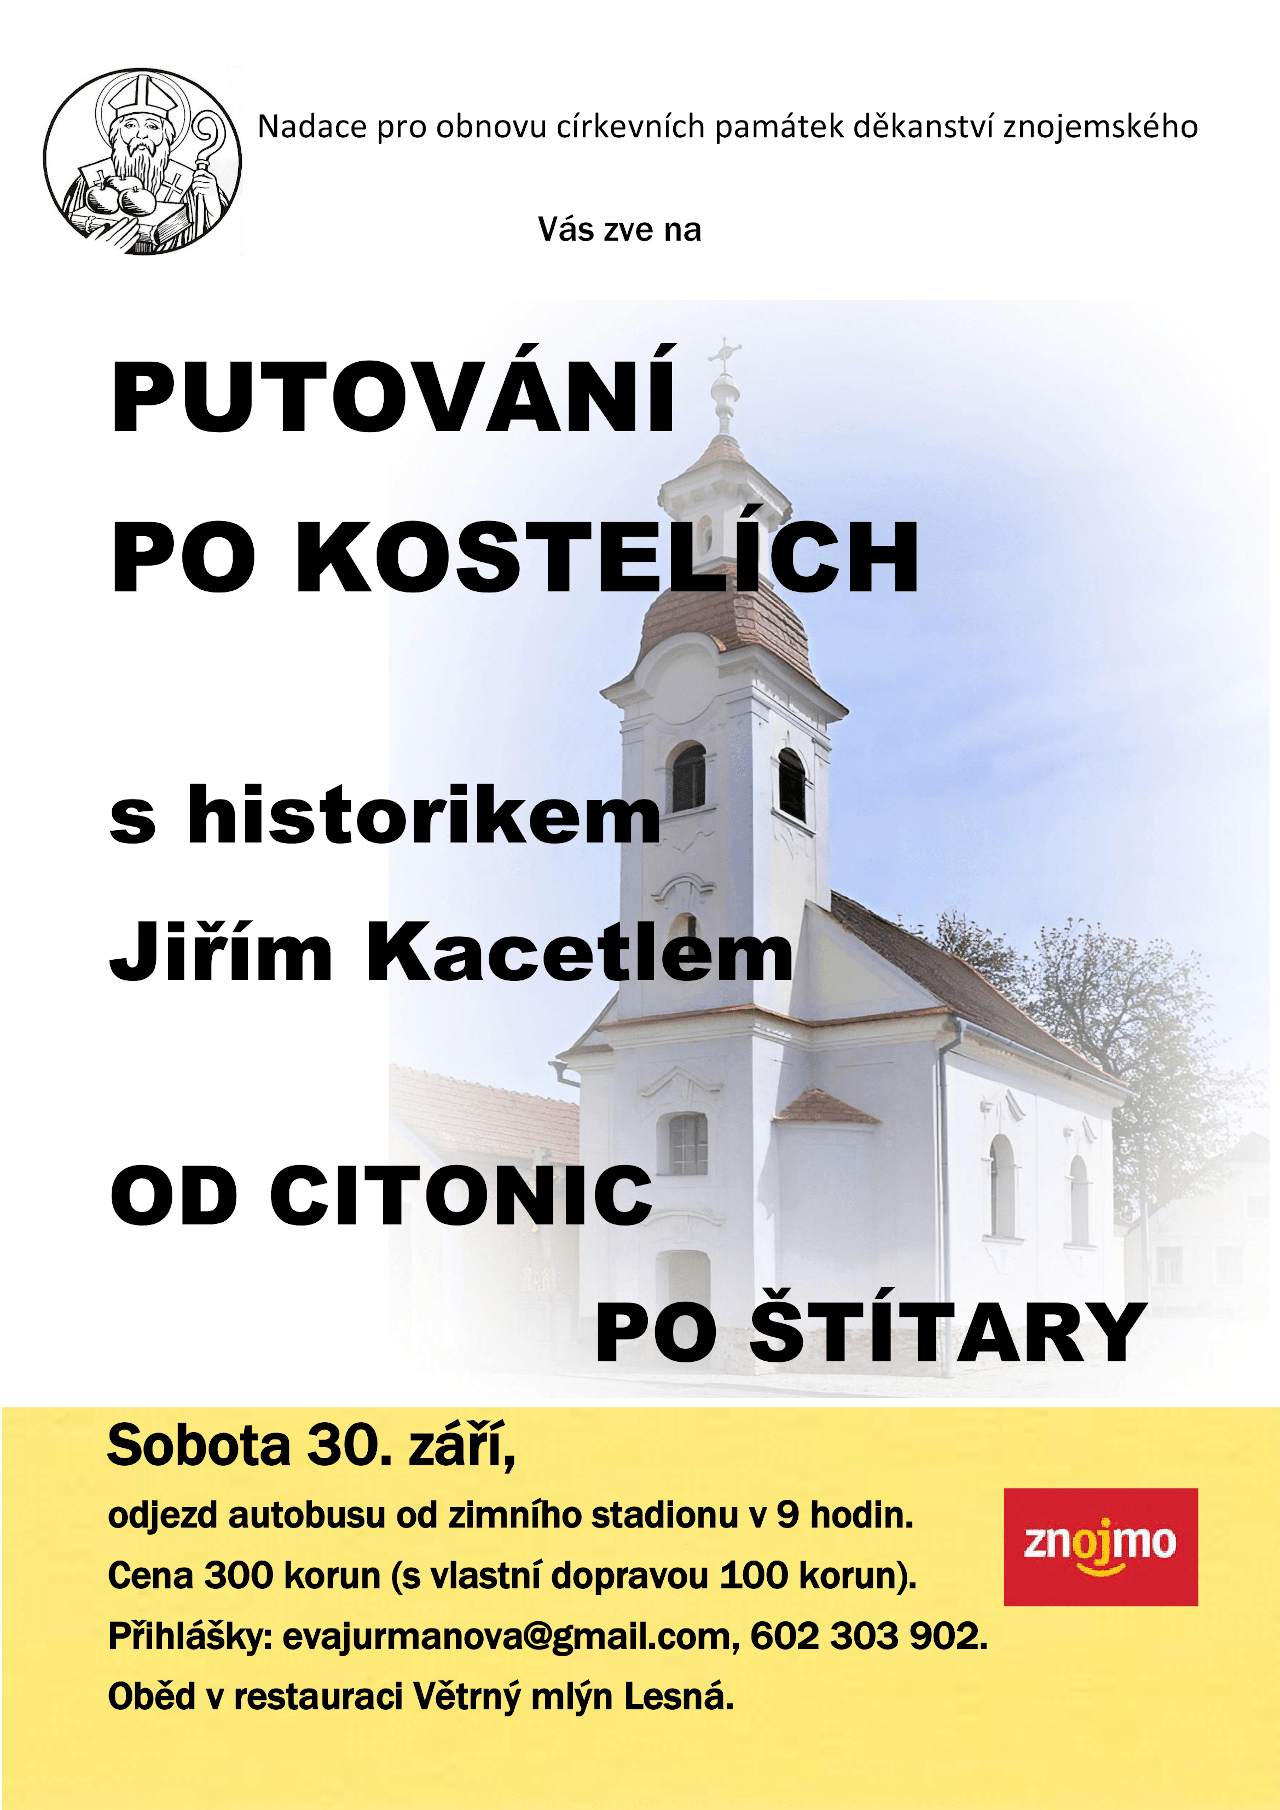 Putování po kostelích s historikem Jiřím Kacetlem